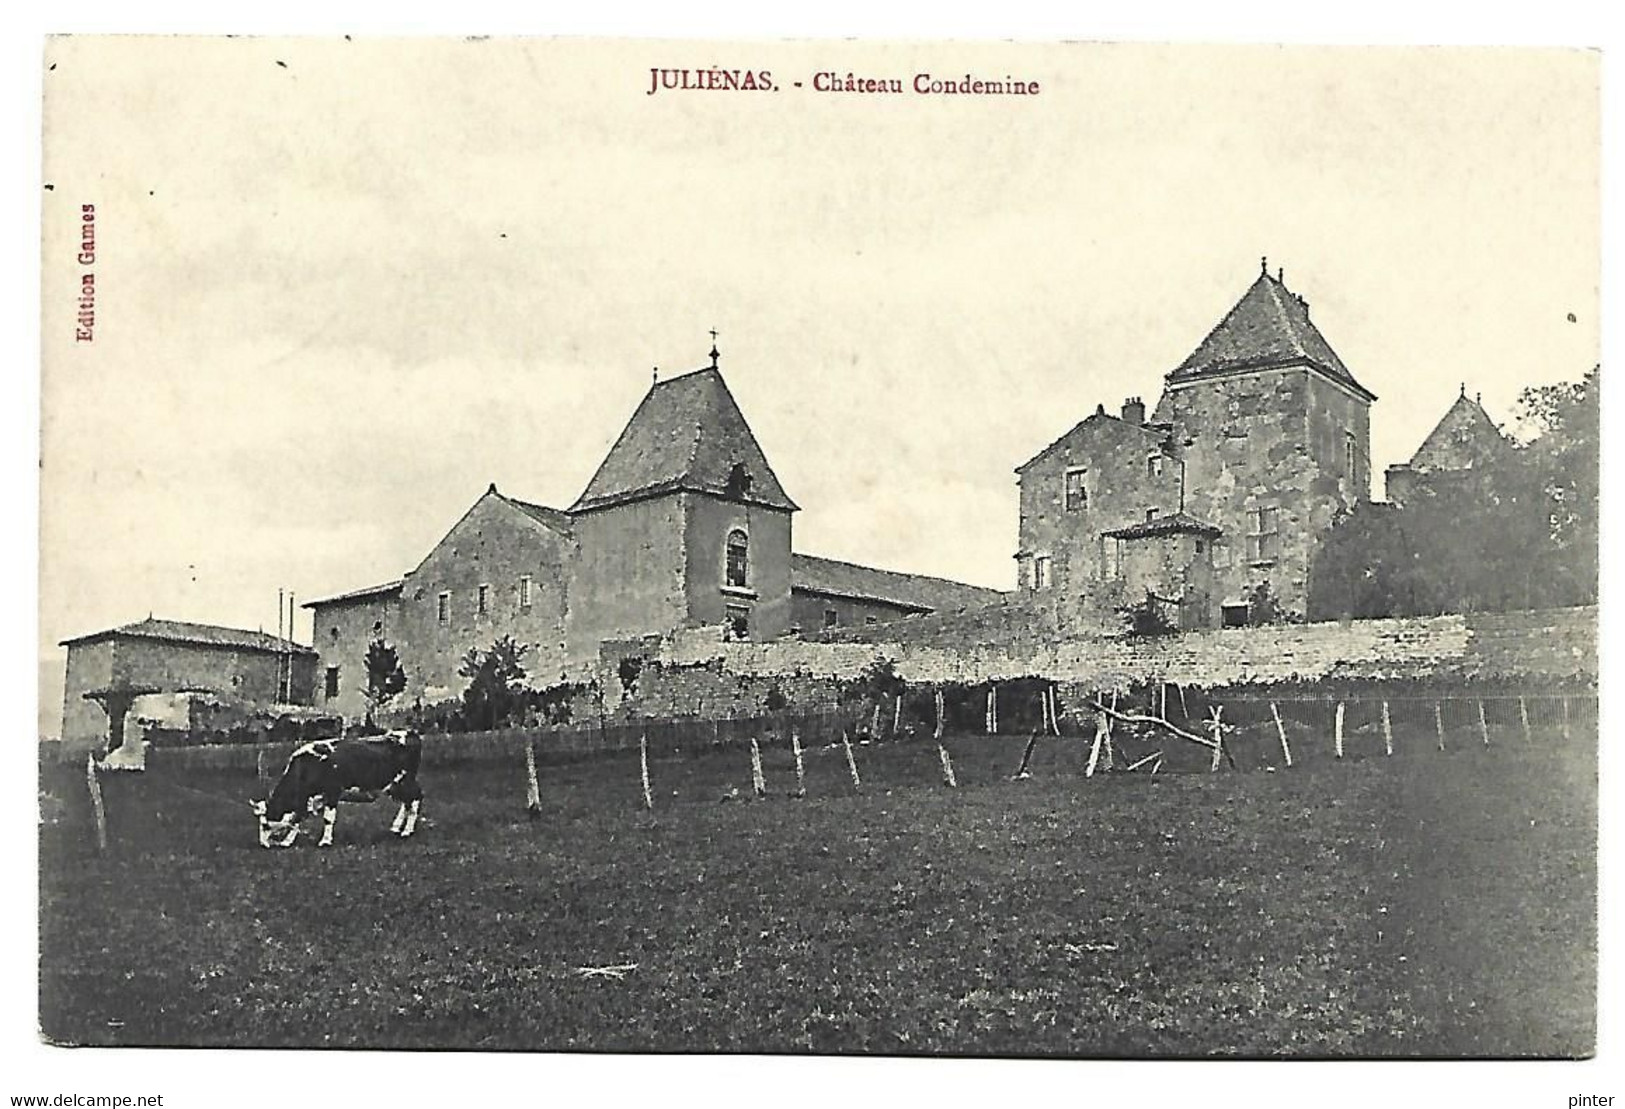 JULIENAS - Chateau Condemine - Julienas